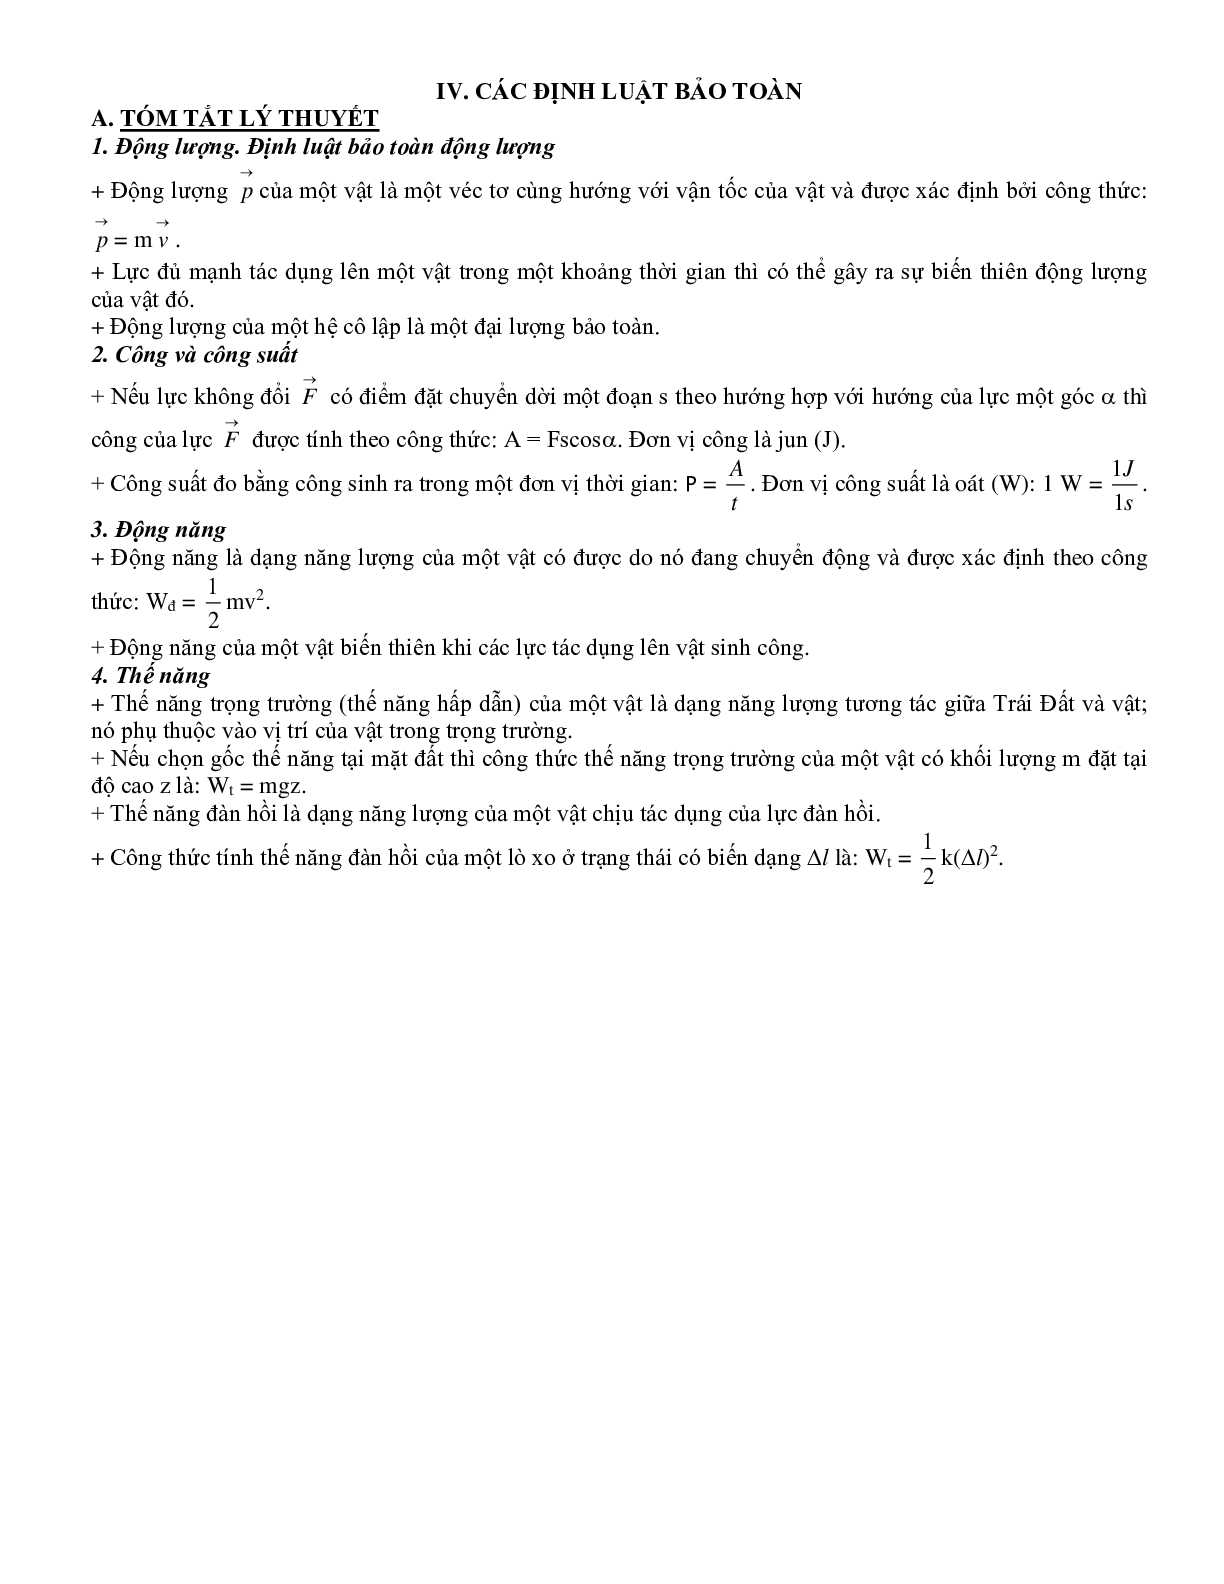 Chuyên đề Các định luật bảo toàn môn Vật lý lớp 10 (trang 1)